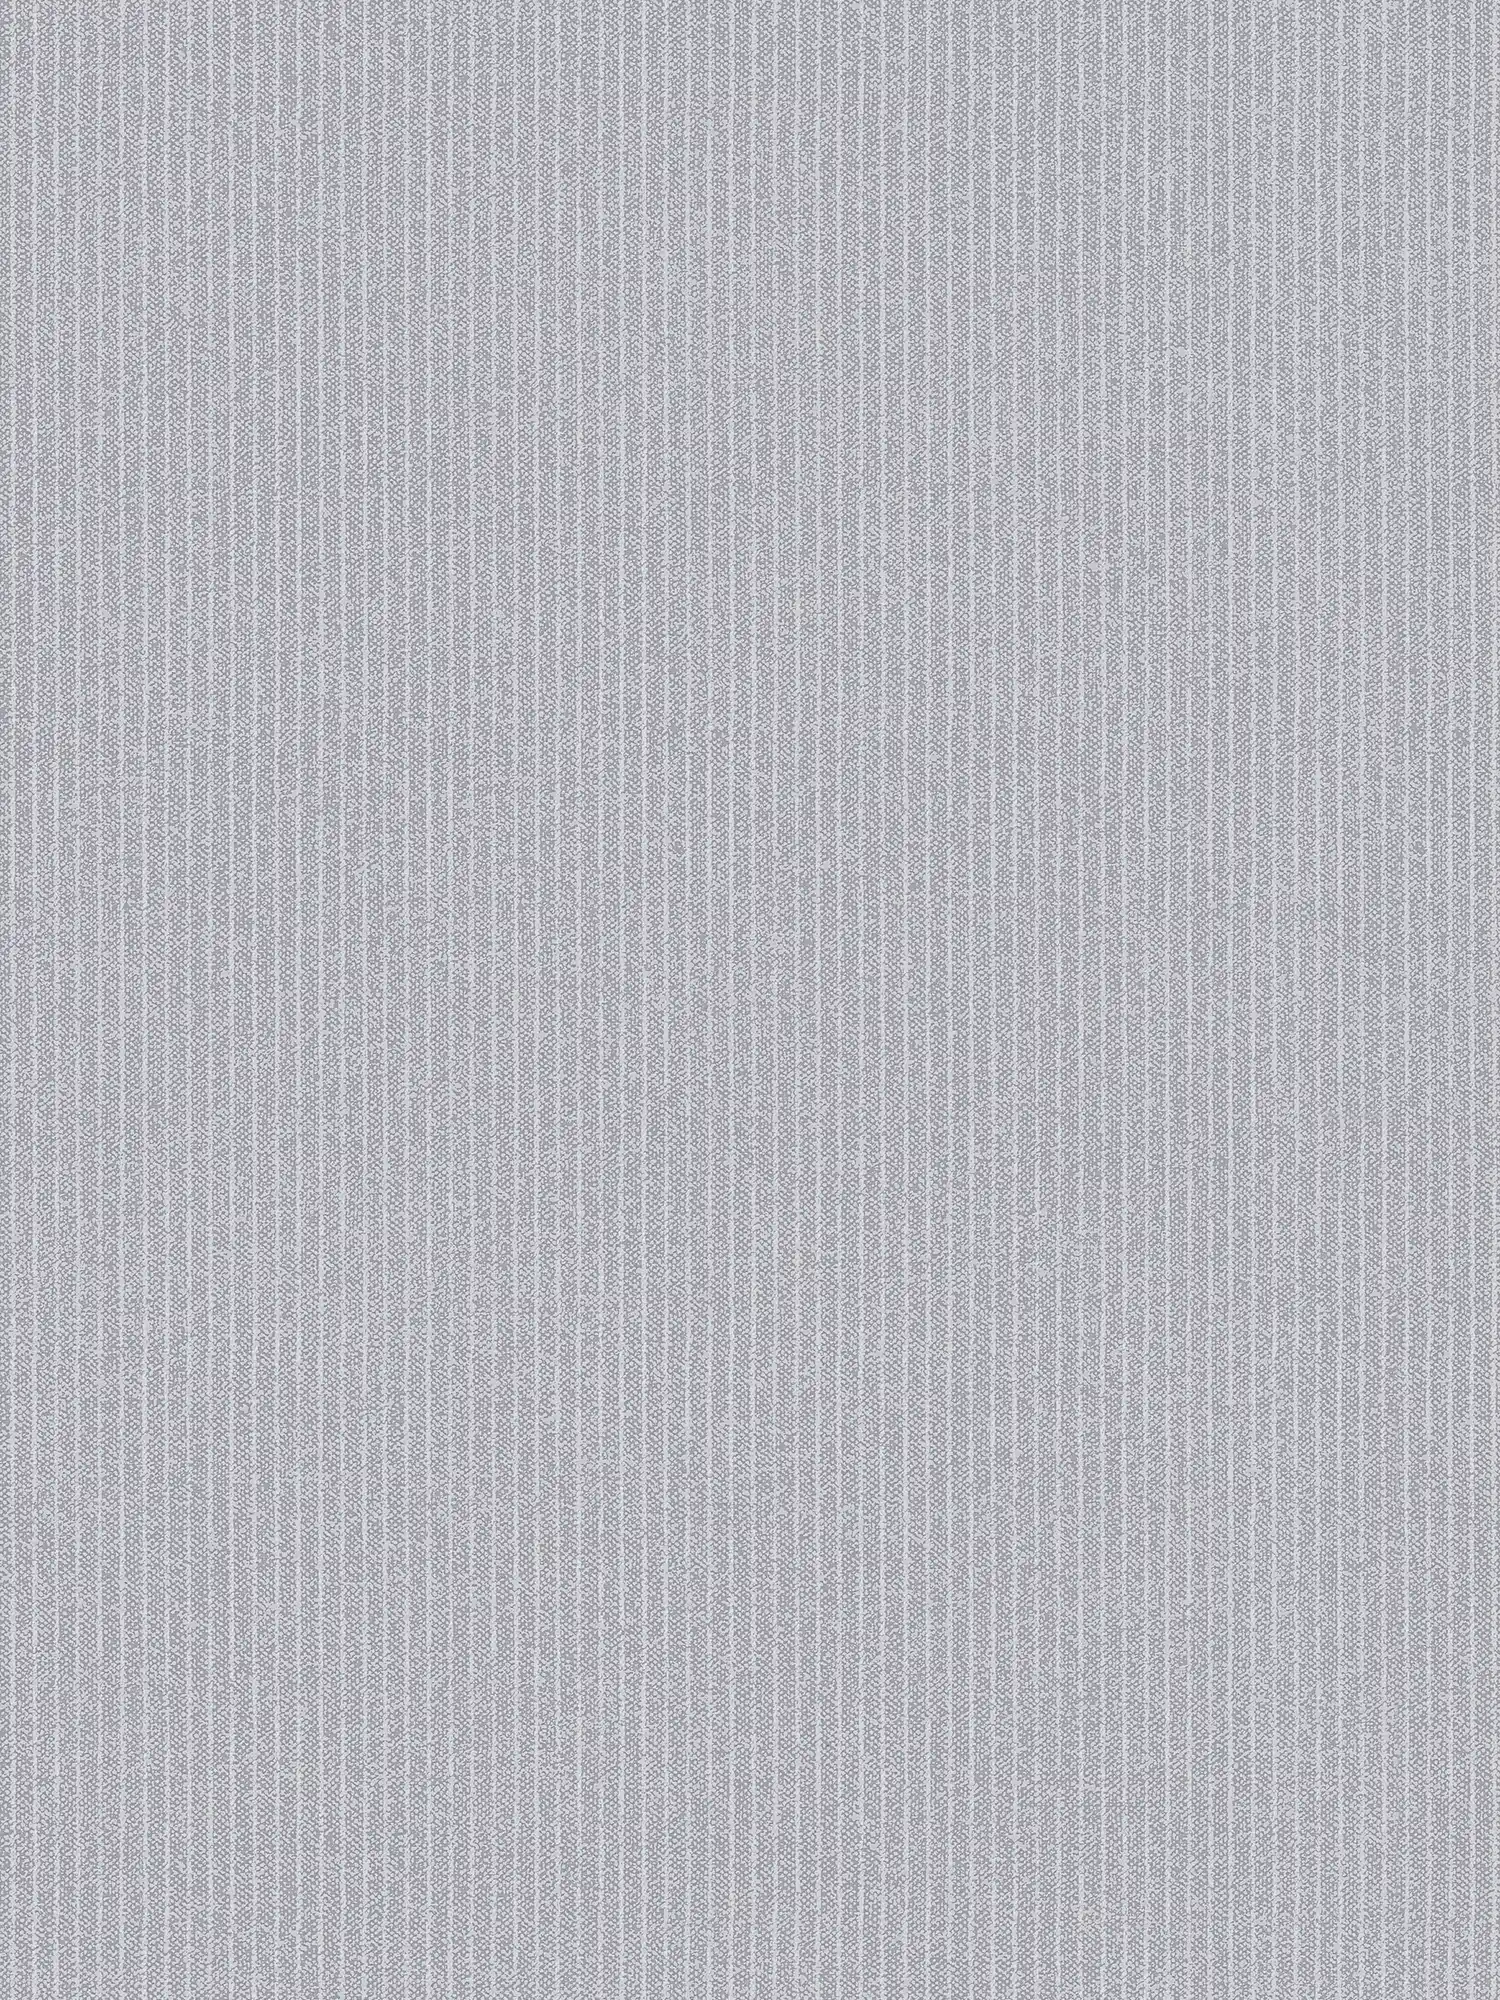 Linierte Tapete schmalen Streifen im Textil-Look – Grau
